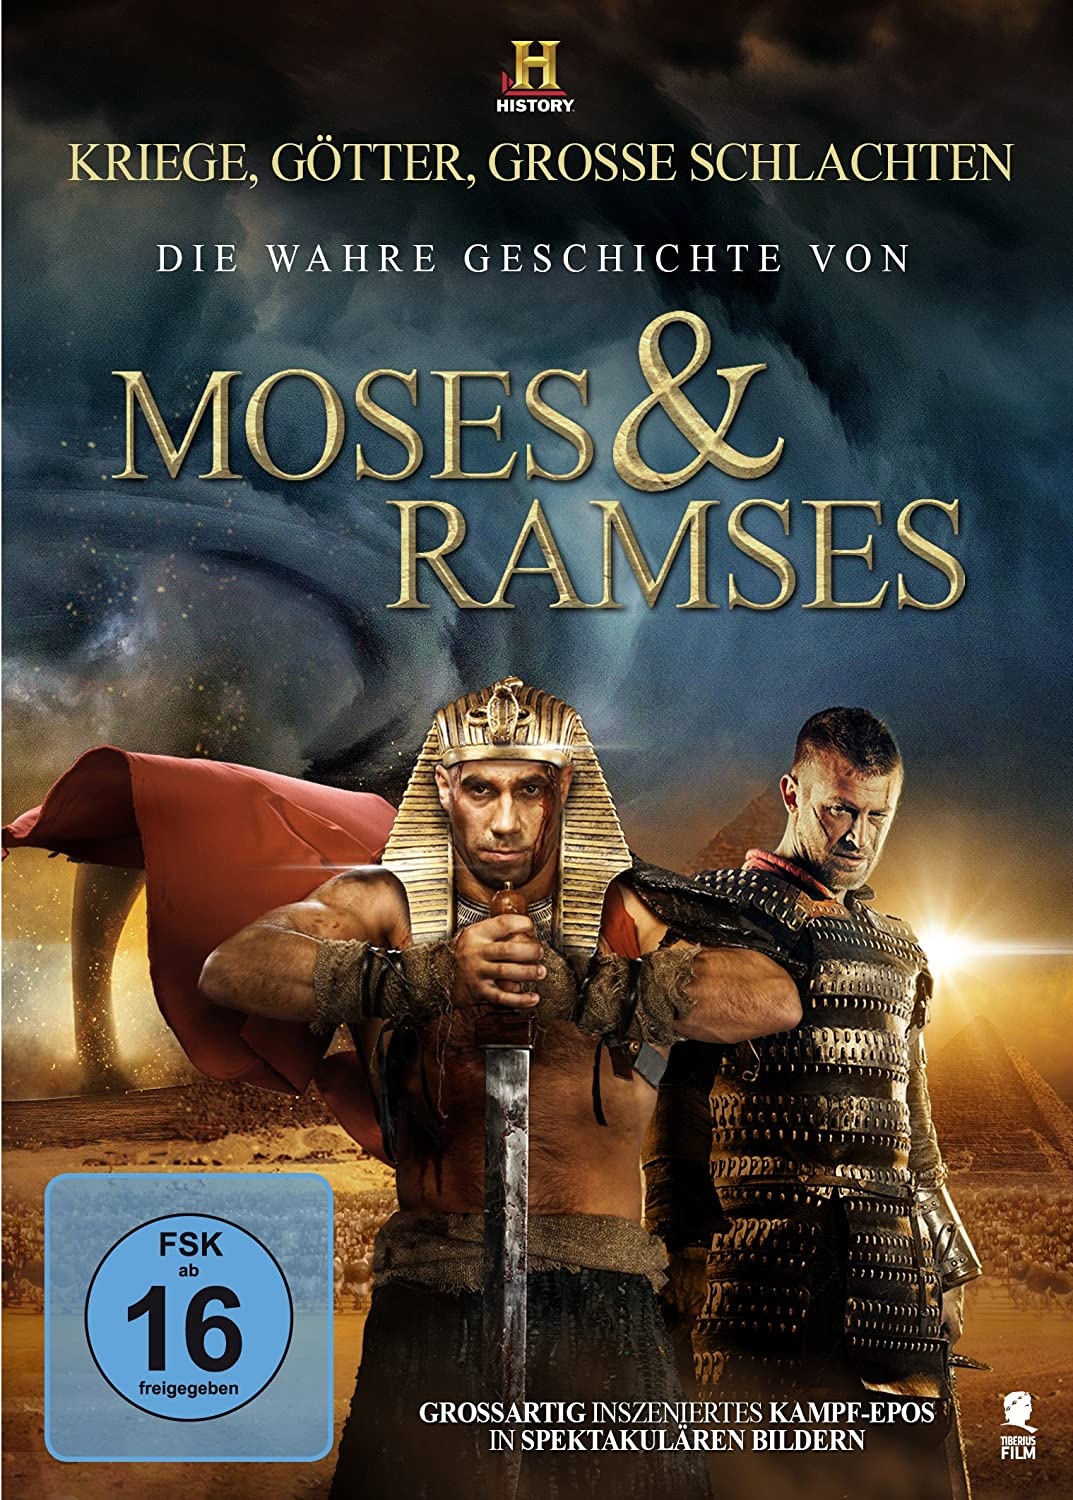 Die wahre Geschichte von Moses & Ramses (History) [DVD] (Neu differenzbesteuert)